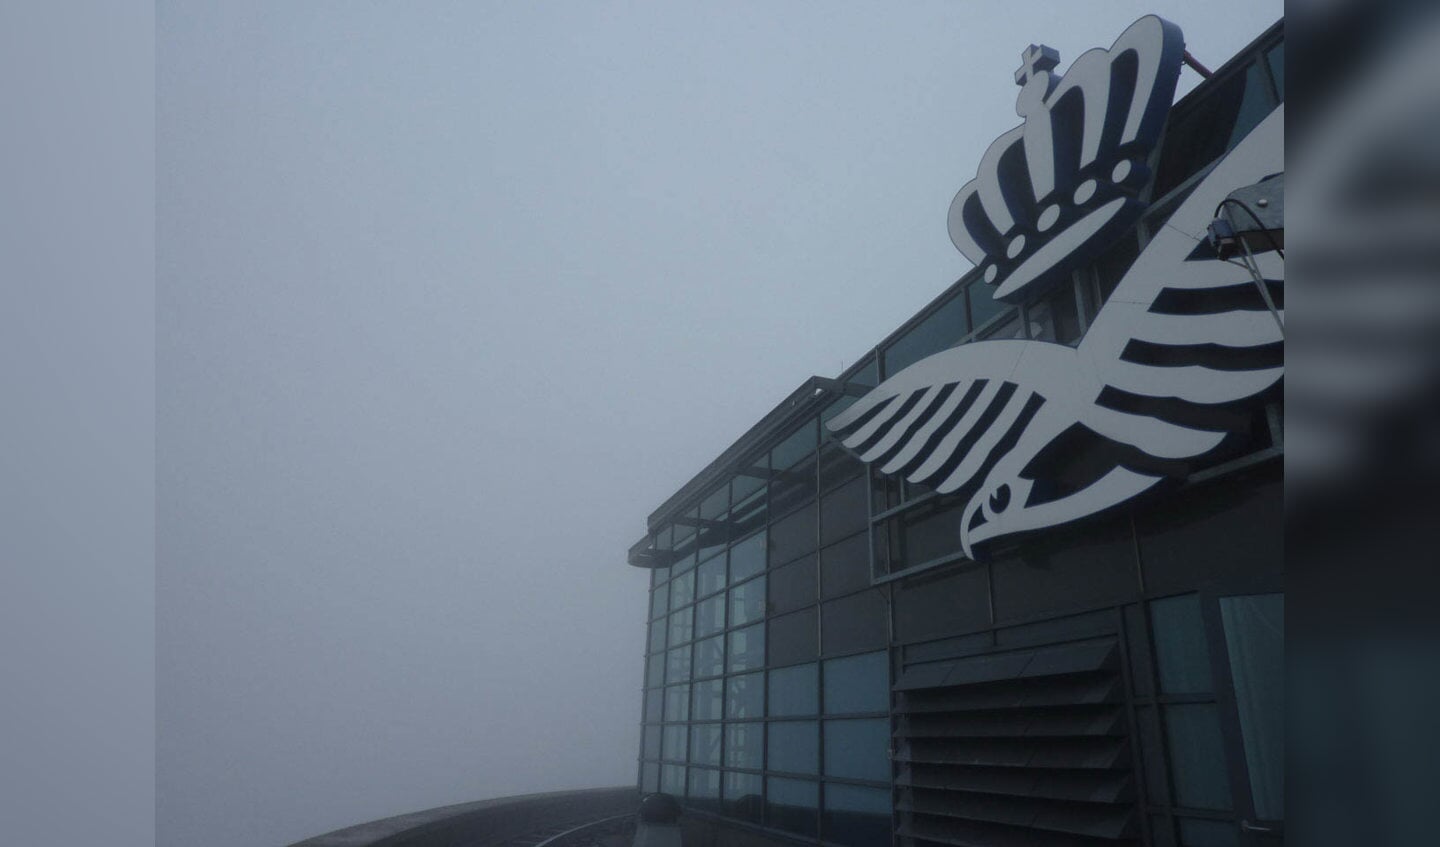 Mist van de Luchtmachttoren in de Haagse Beemden. foto Yvonne Vermeulen